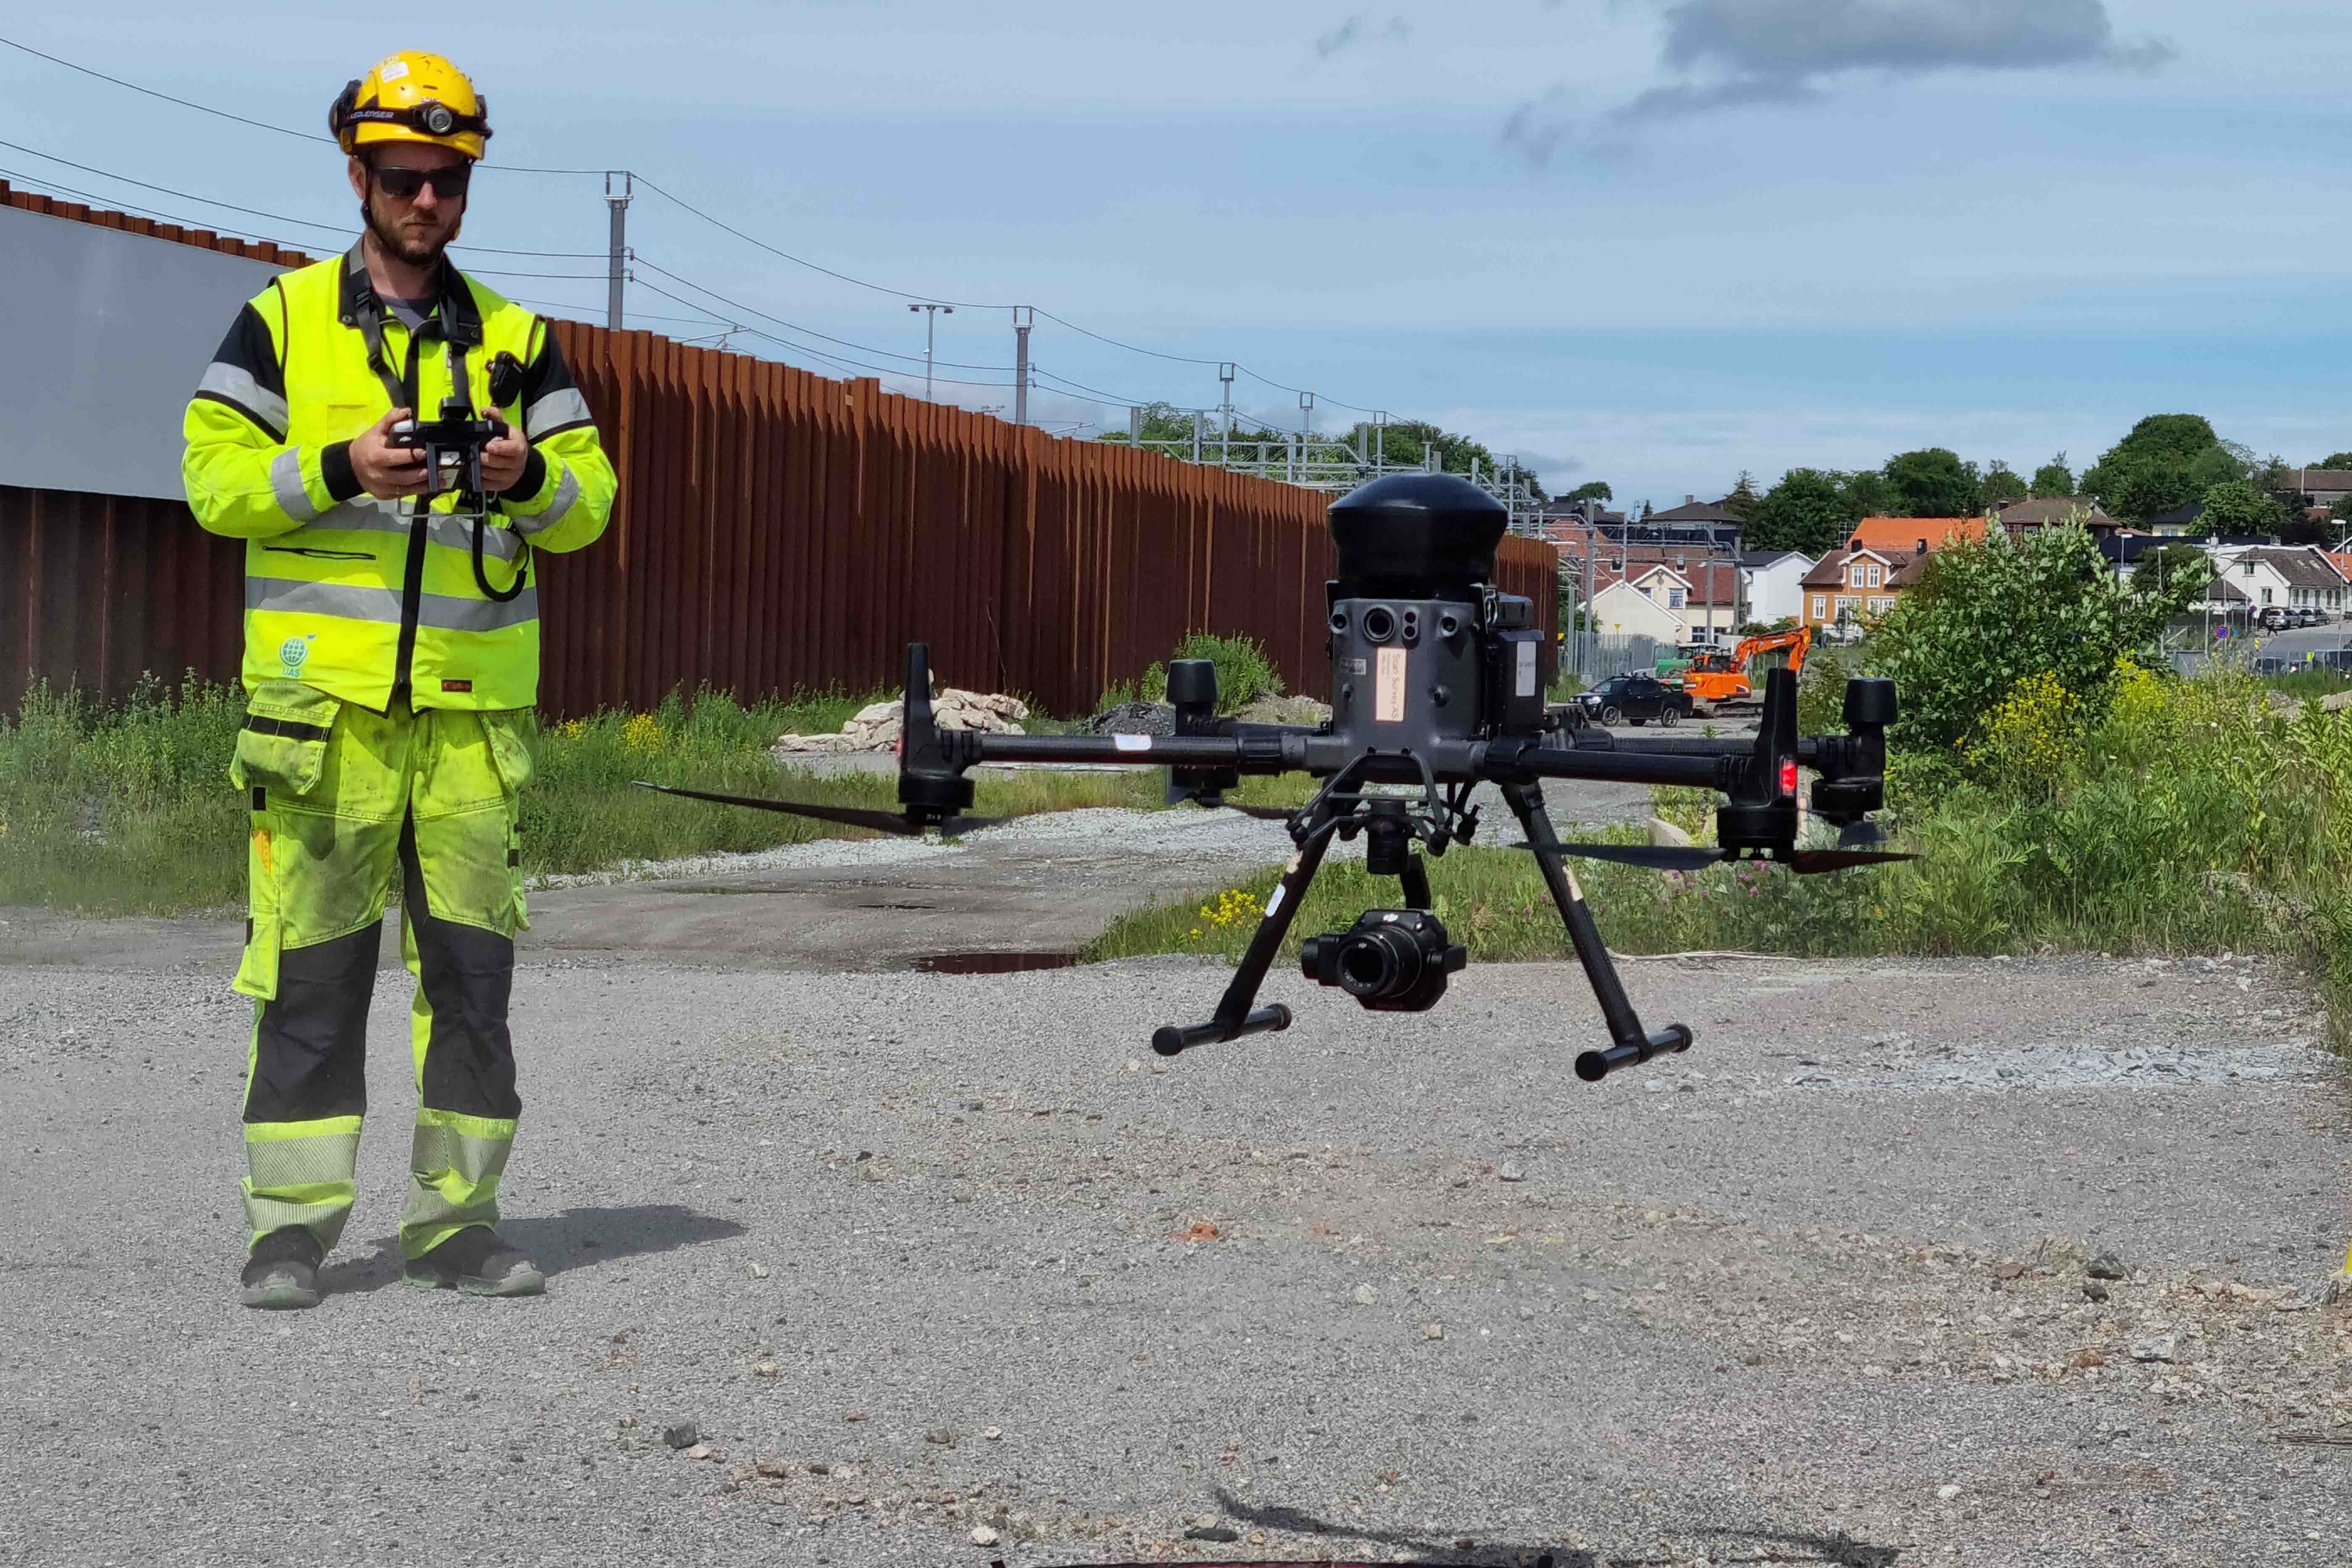 Her letter dronen fra anleggsområdet ved spuntveggen ved Moss havn. Foto: Karoline Vårdal, Bane NOR

